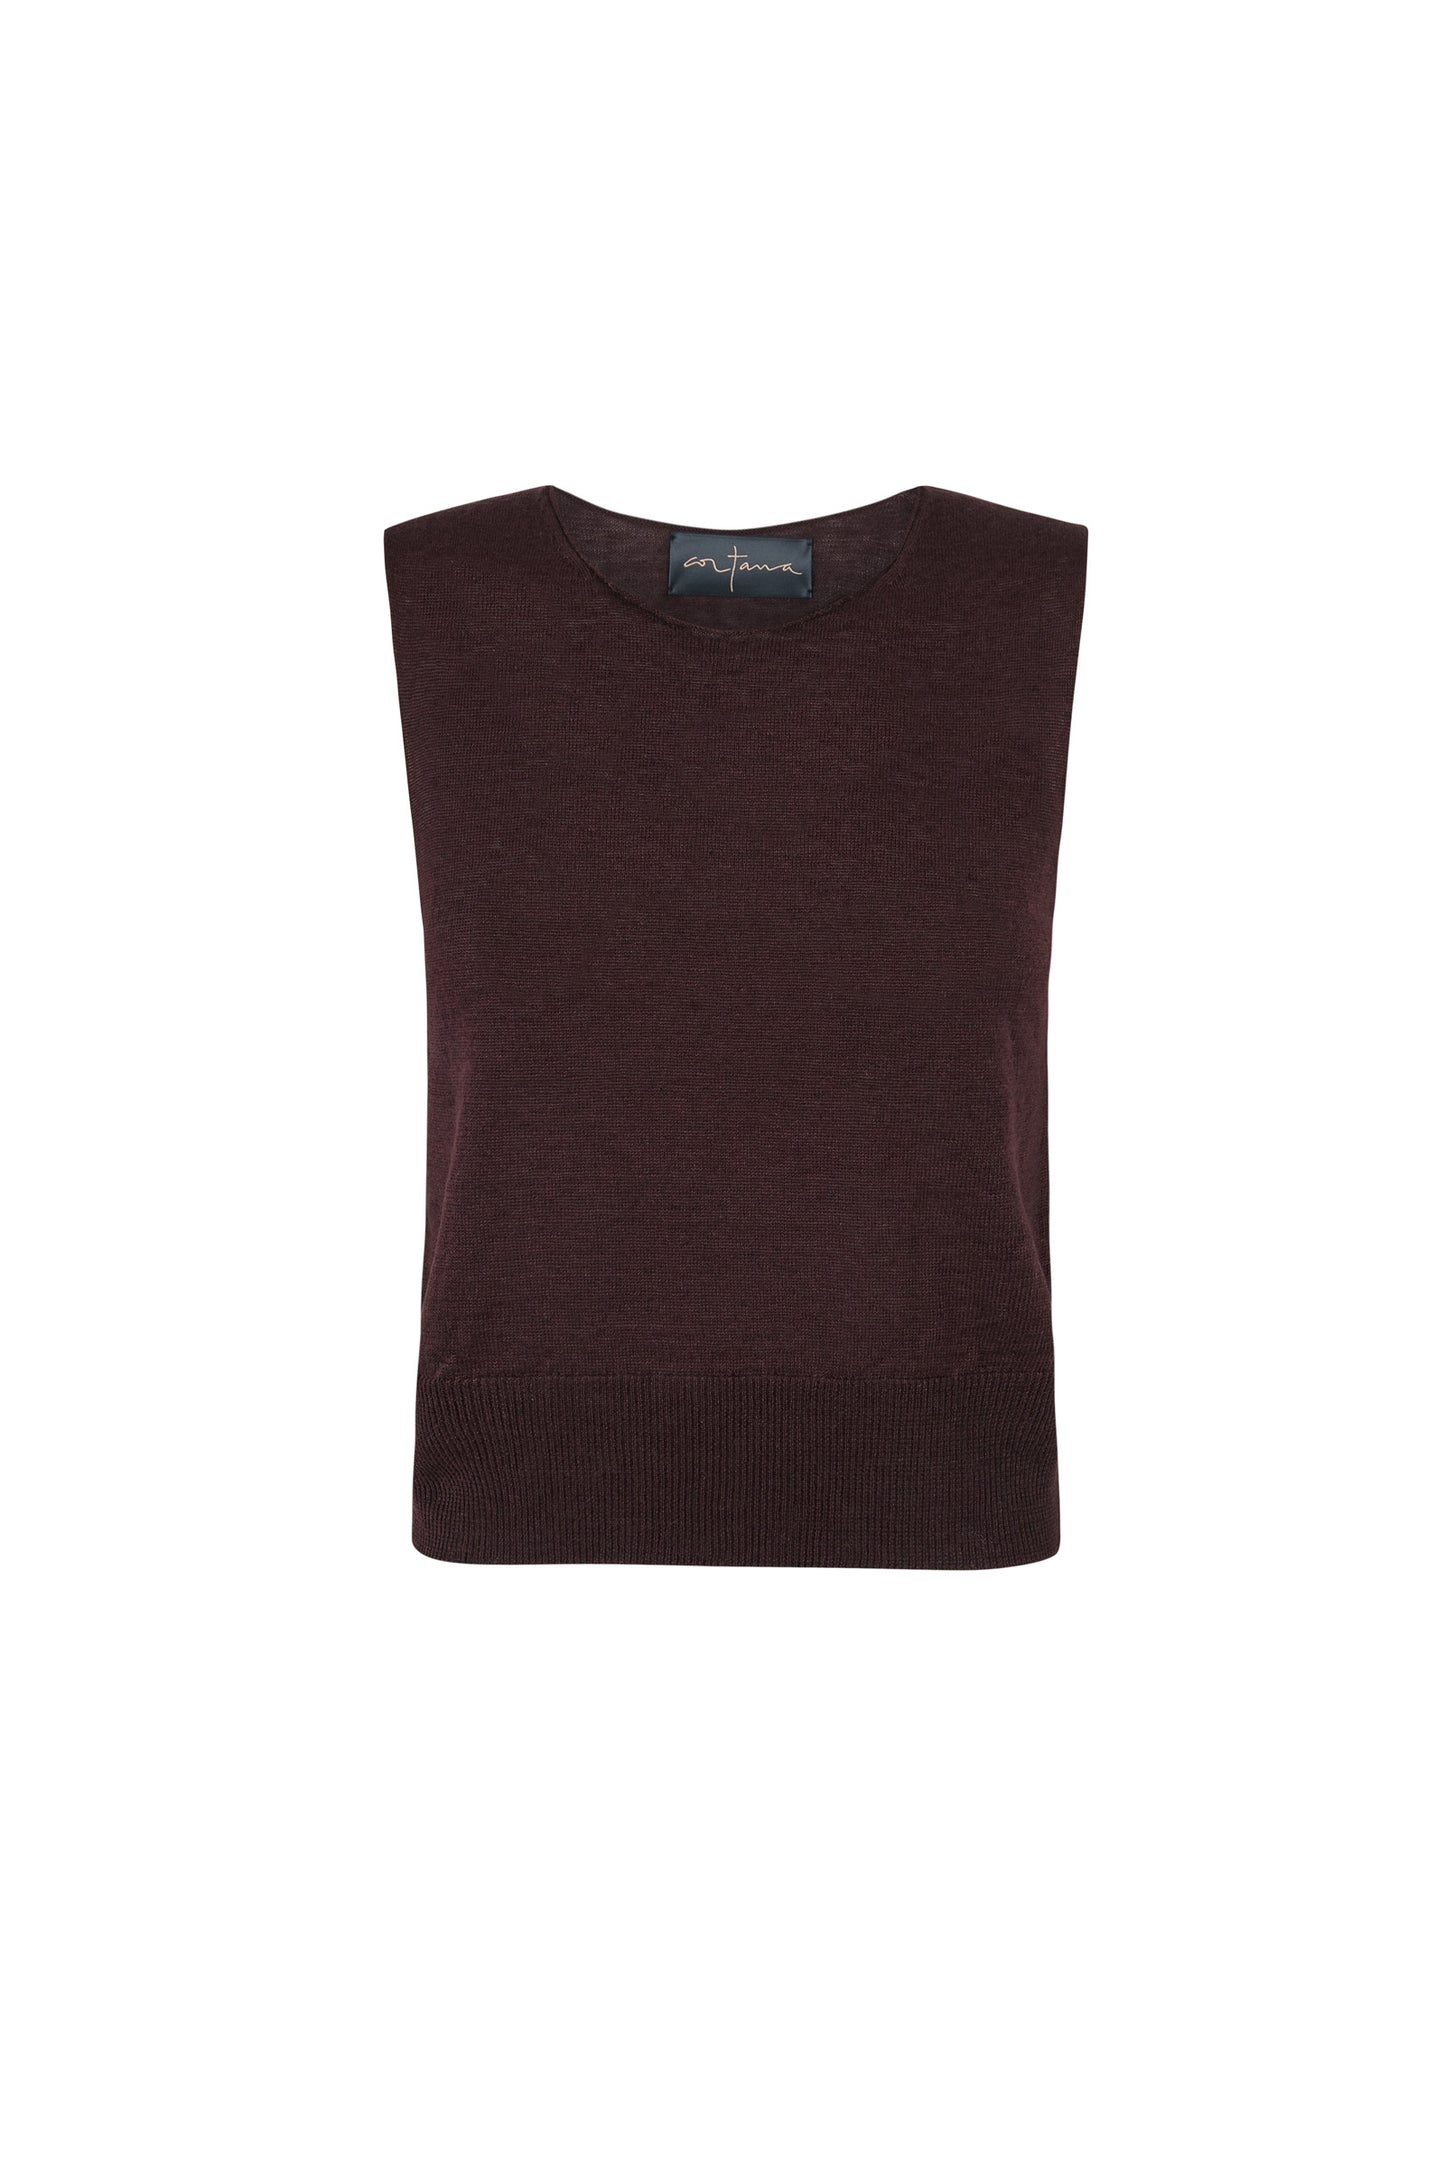 Rinen, maroon linen knit vest